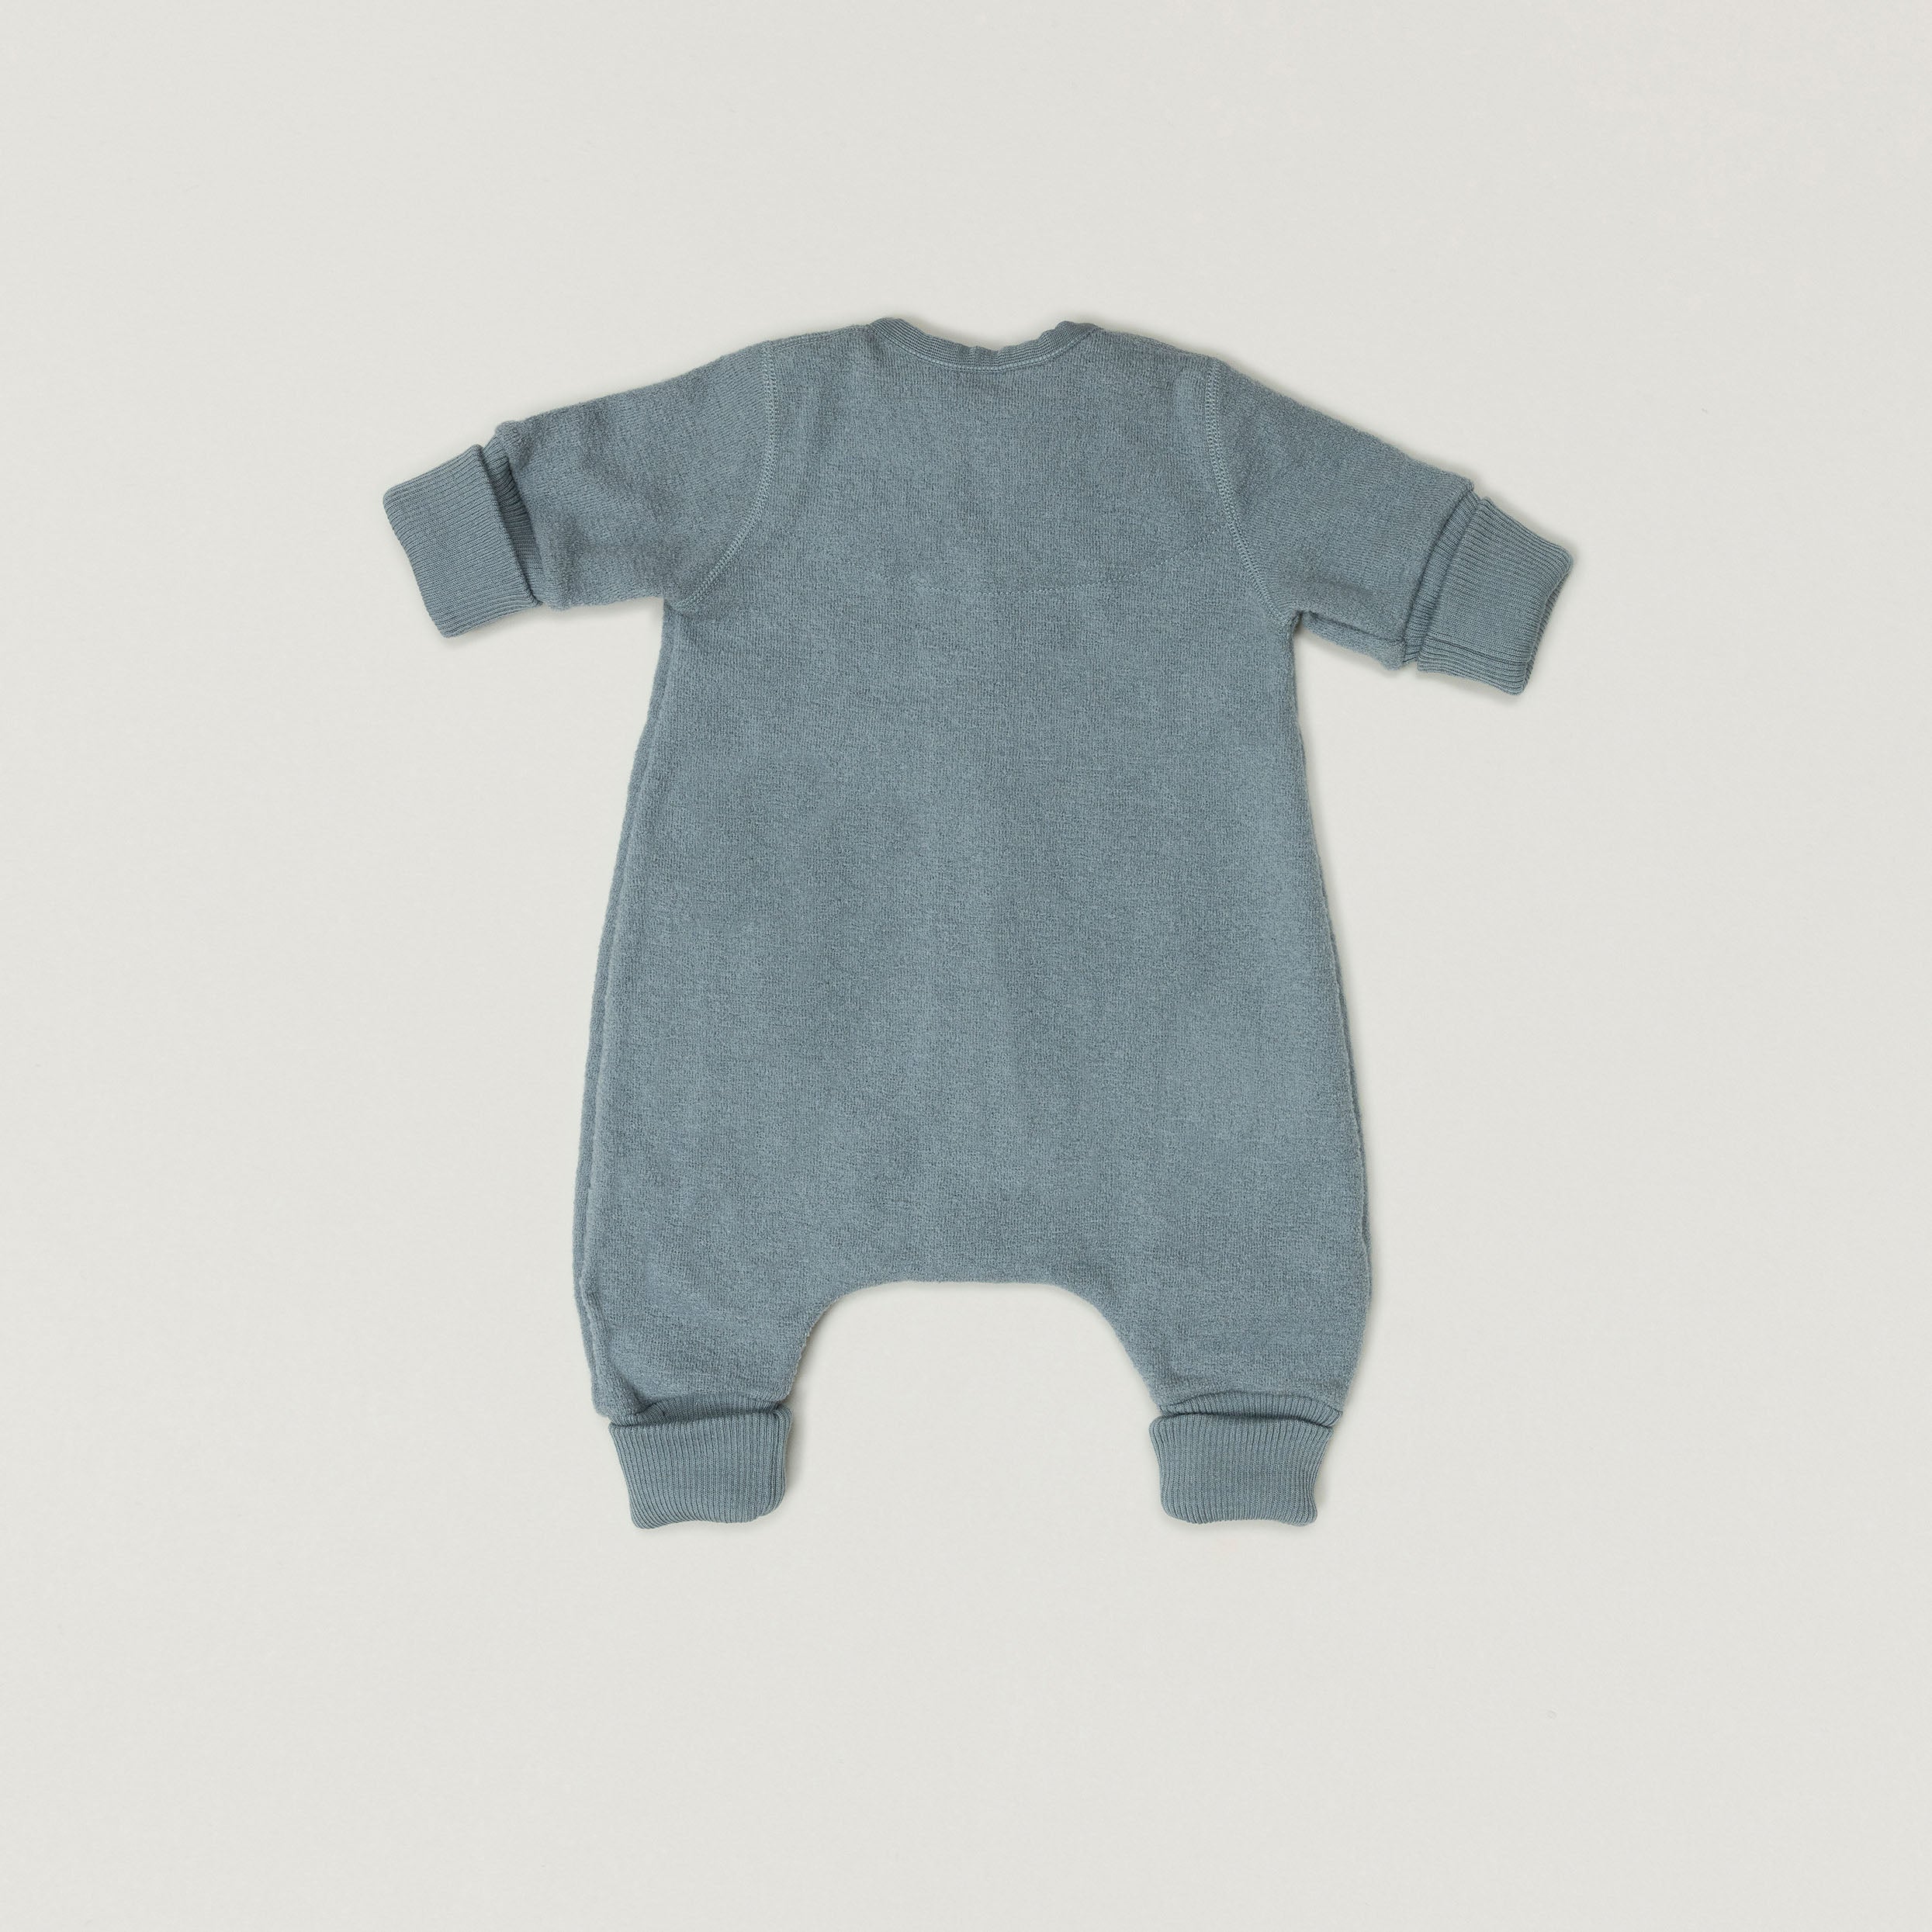 Produktfoto des Babybox Collection Toddler Schlafsack aus Wollwalk in der Farbe Rauchblau von hinten abgebildet.